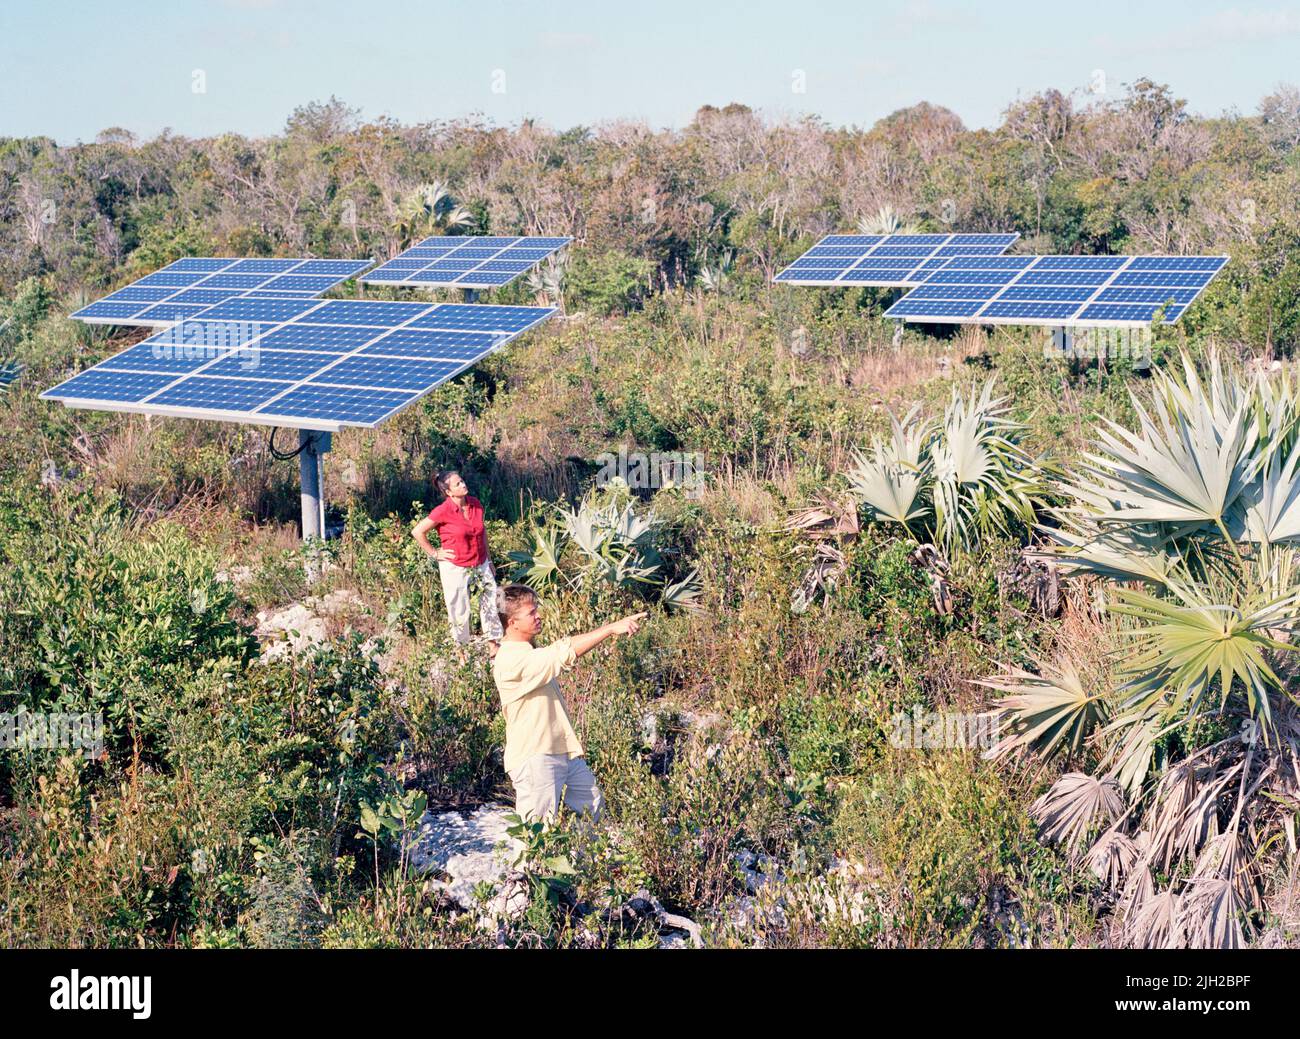 A resort in the Bahamas solar panel field. South Andros, Bahamas Stock Photo